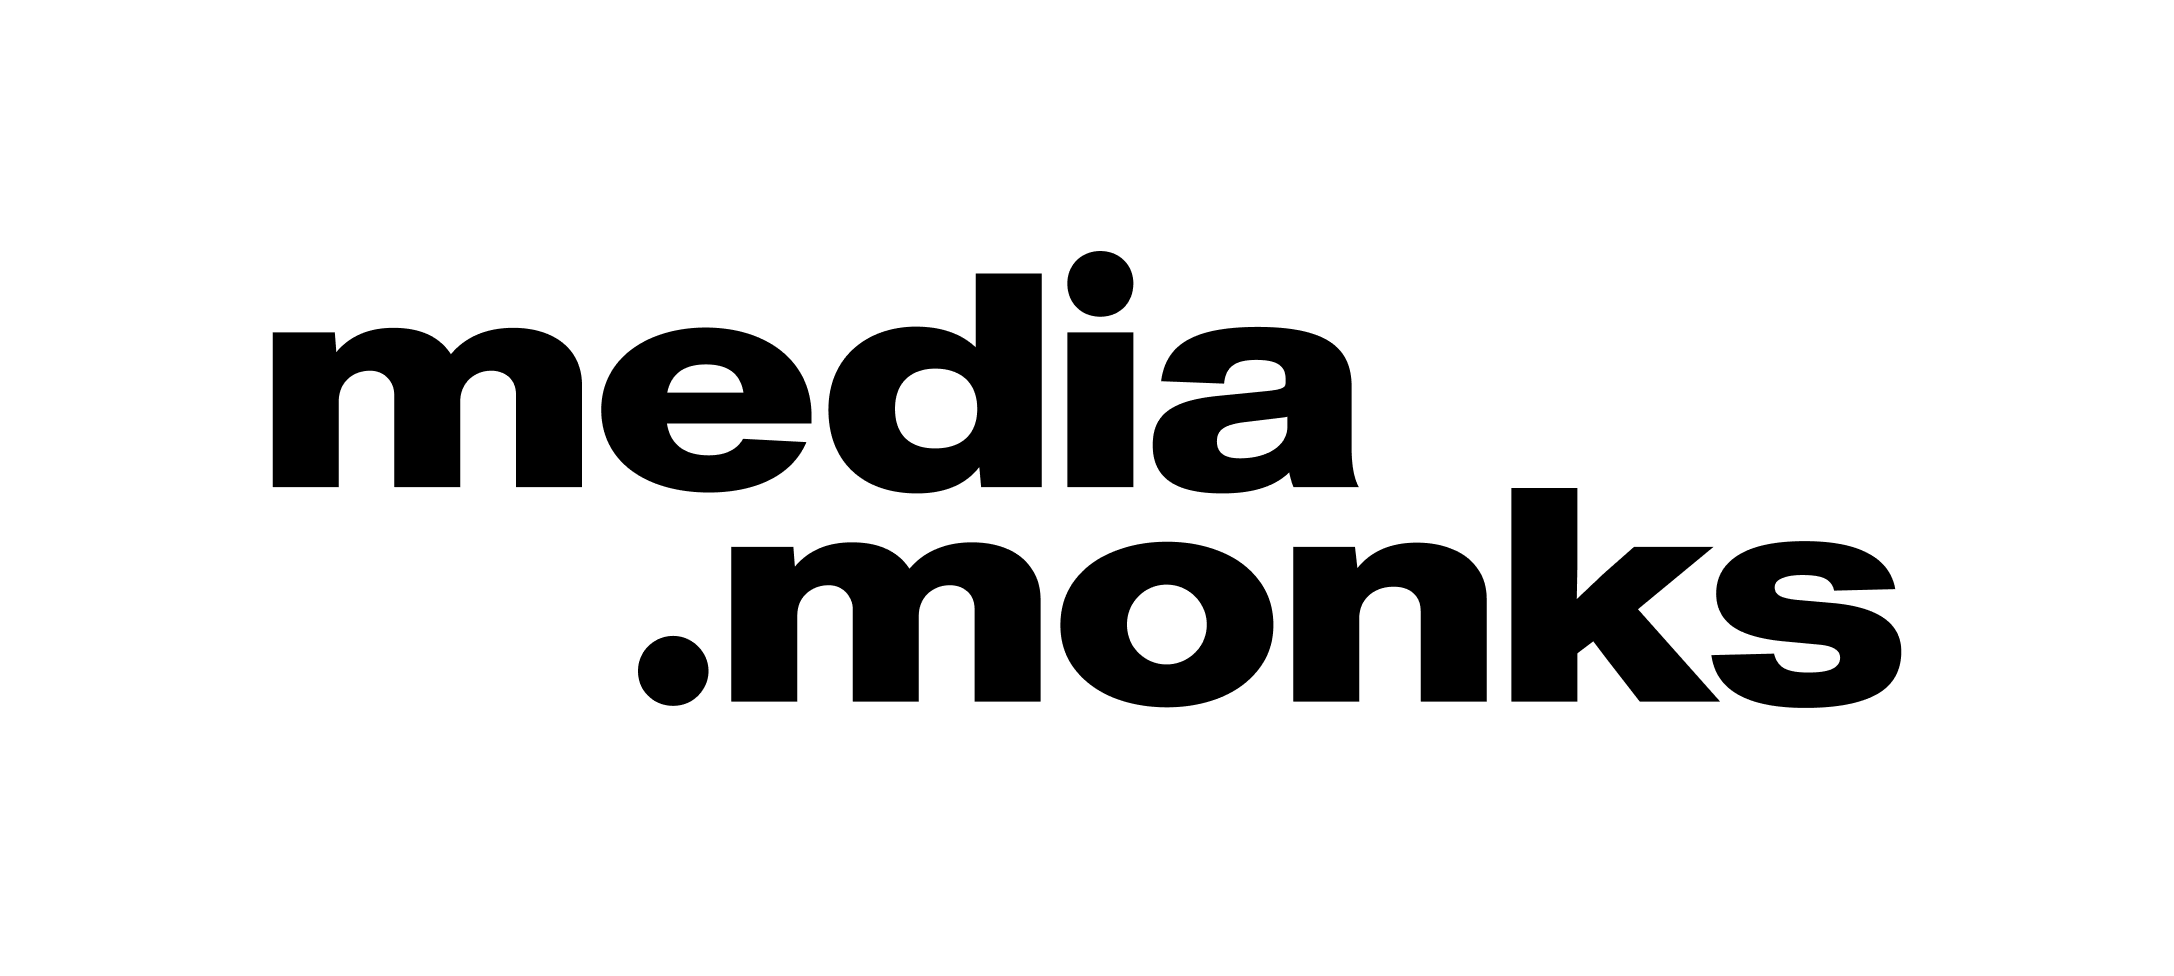 m.m_lockup logo_black